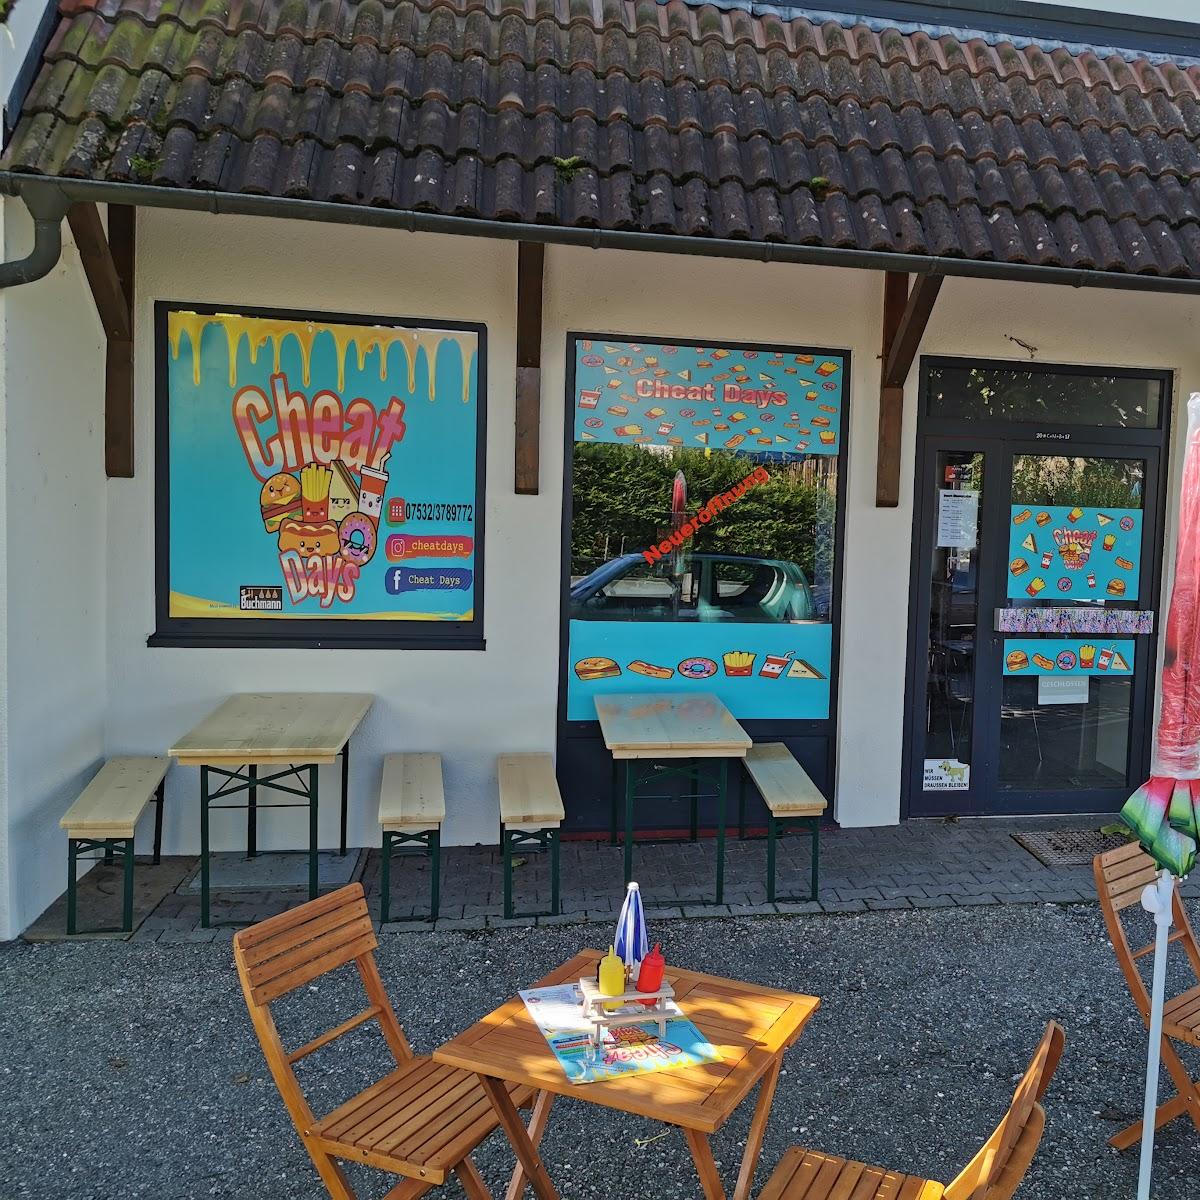 Restaurant "Cheat Days" in Meersburg